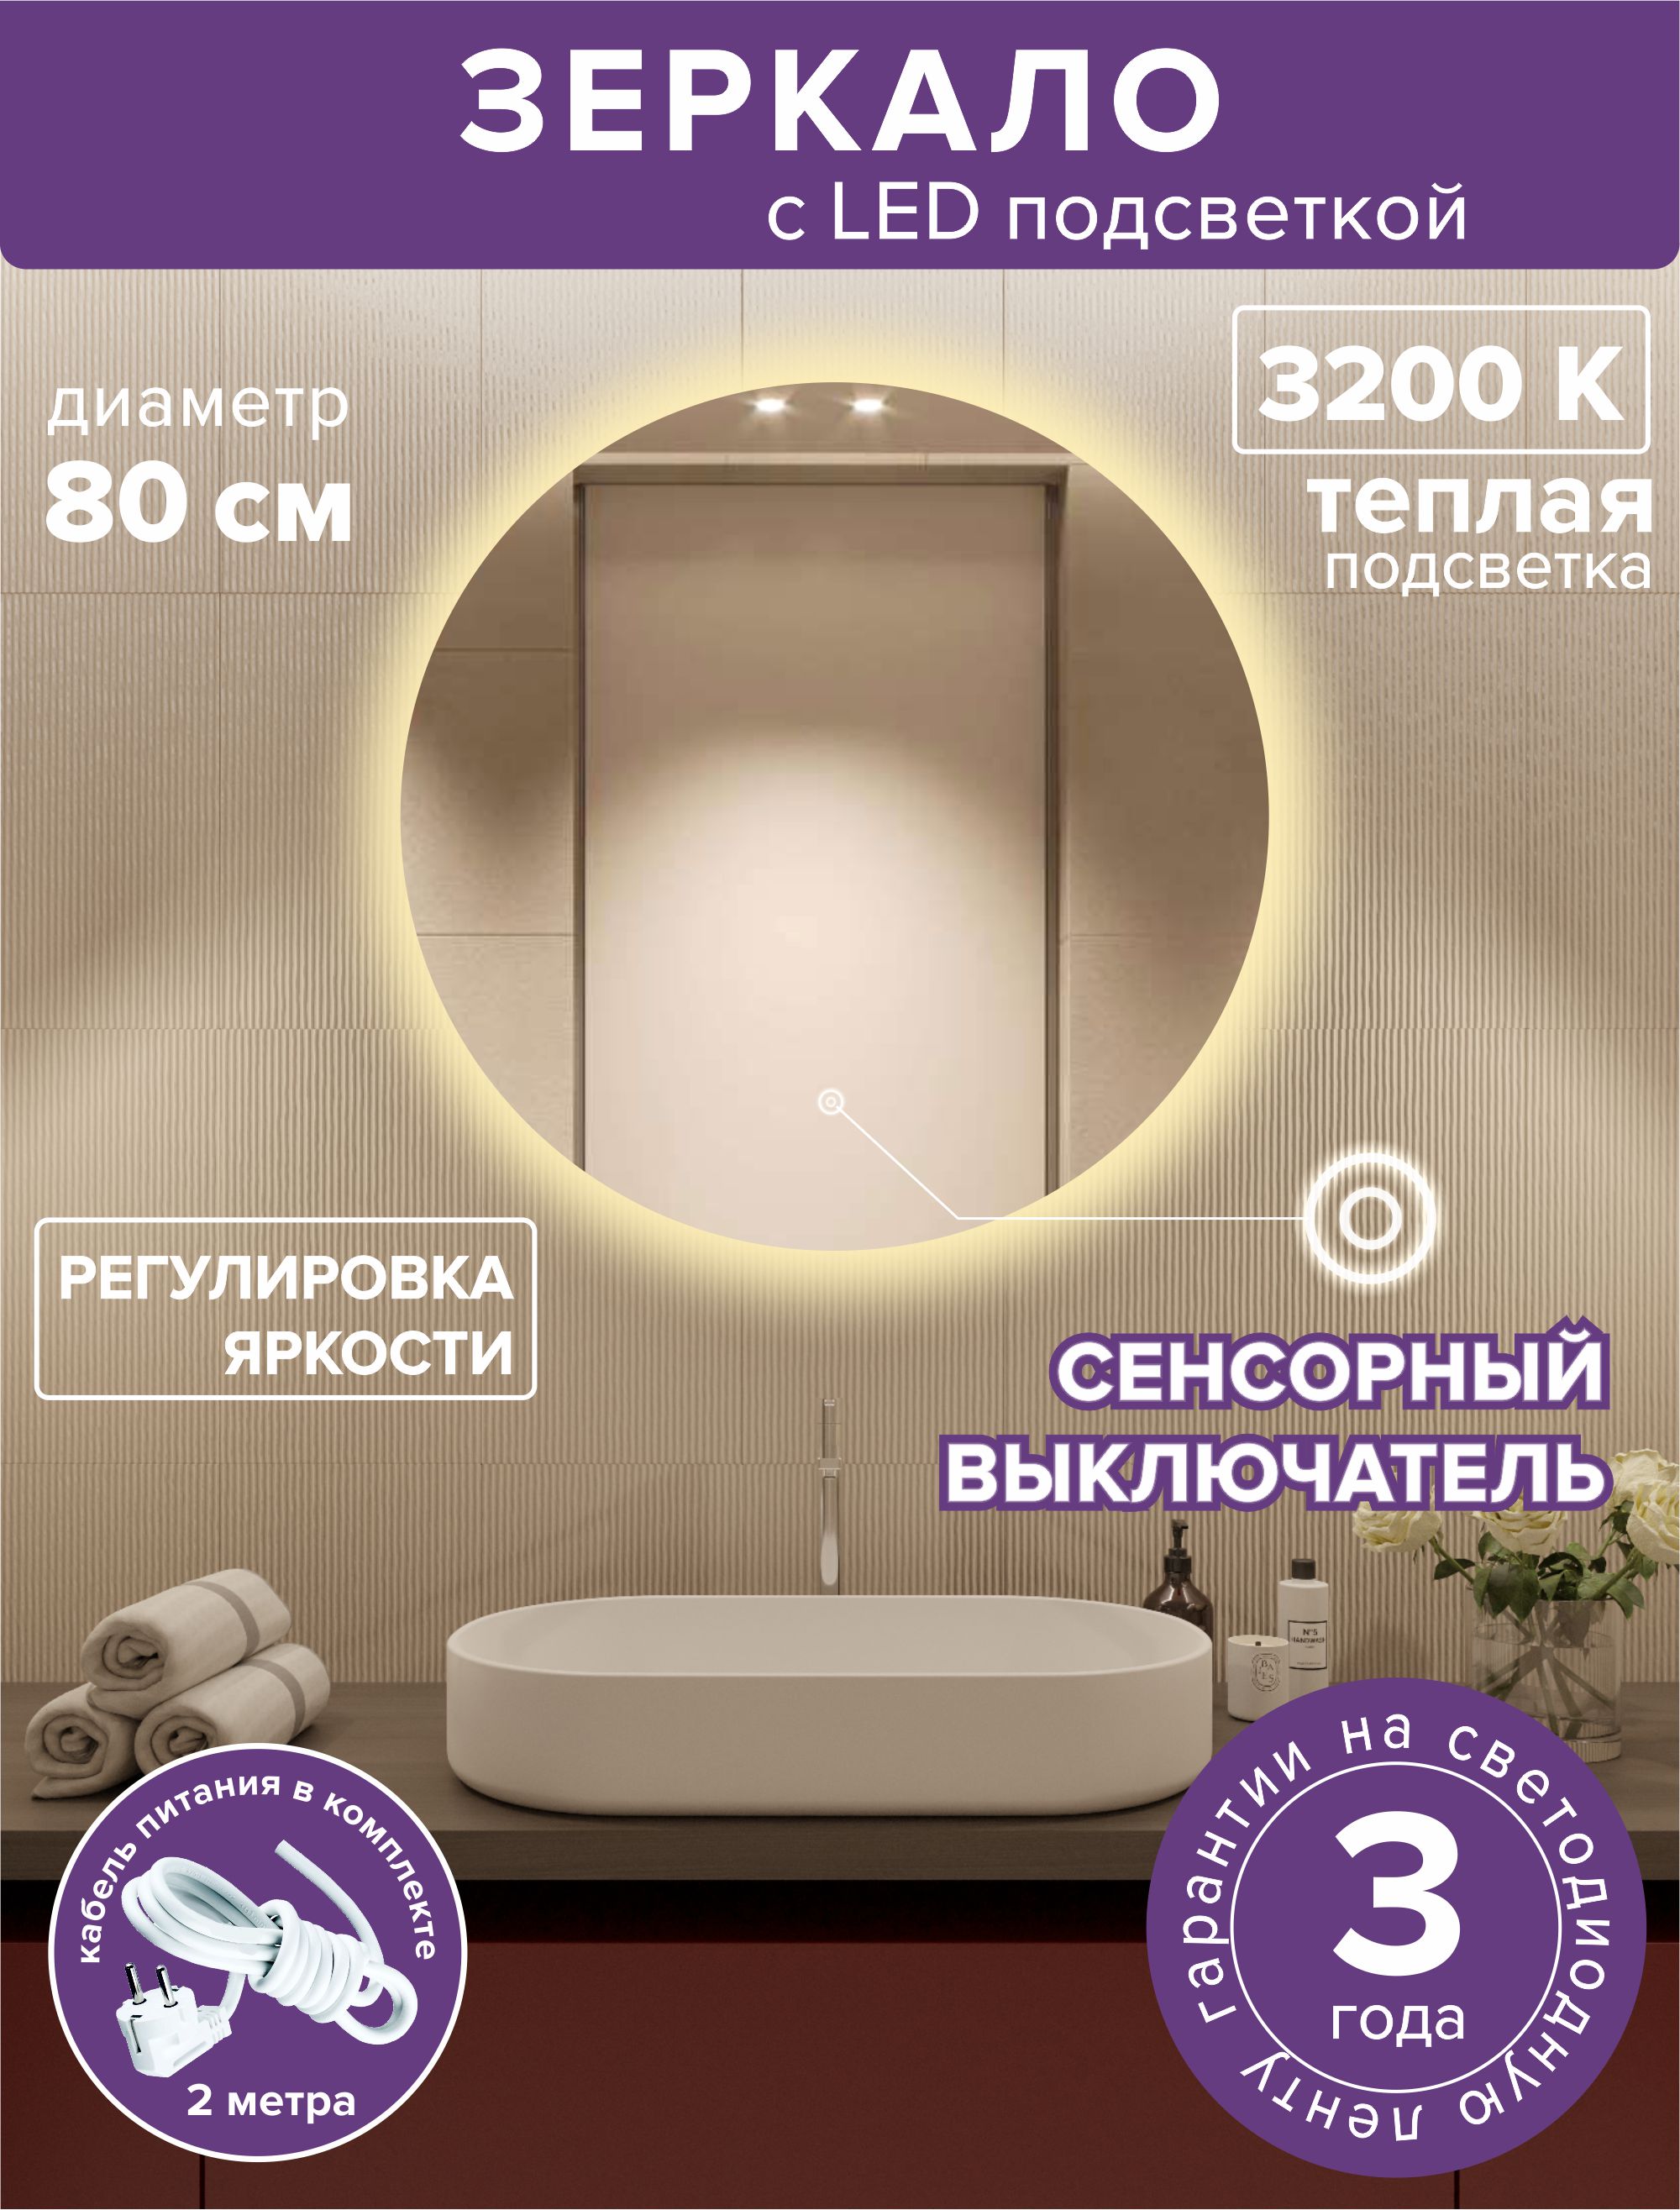 Зеркало для ванной Alfa Mirrors MNa-8Vt круглое, теплая подсветка, 80см зеркало для ванной alfa mirrors с дневной подсветкой 4200к круглое 60см арт na 6vzd